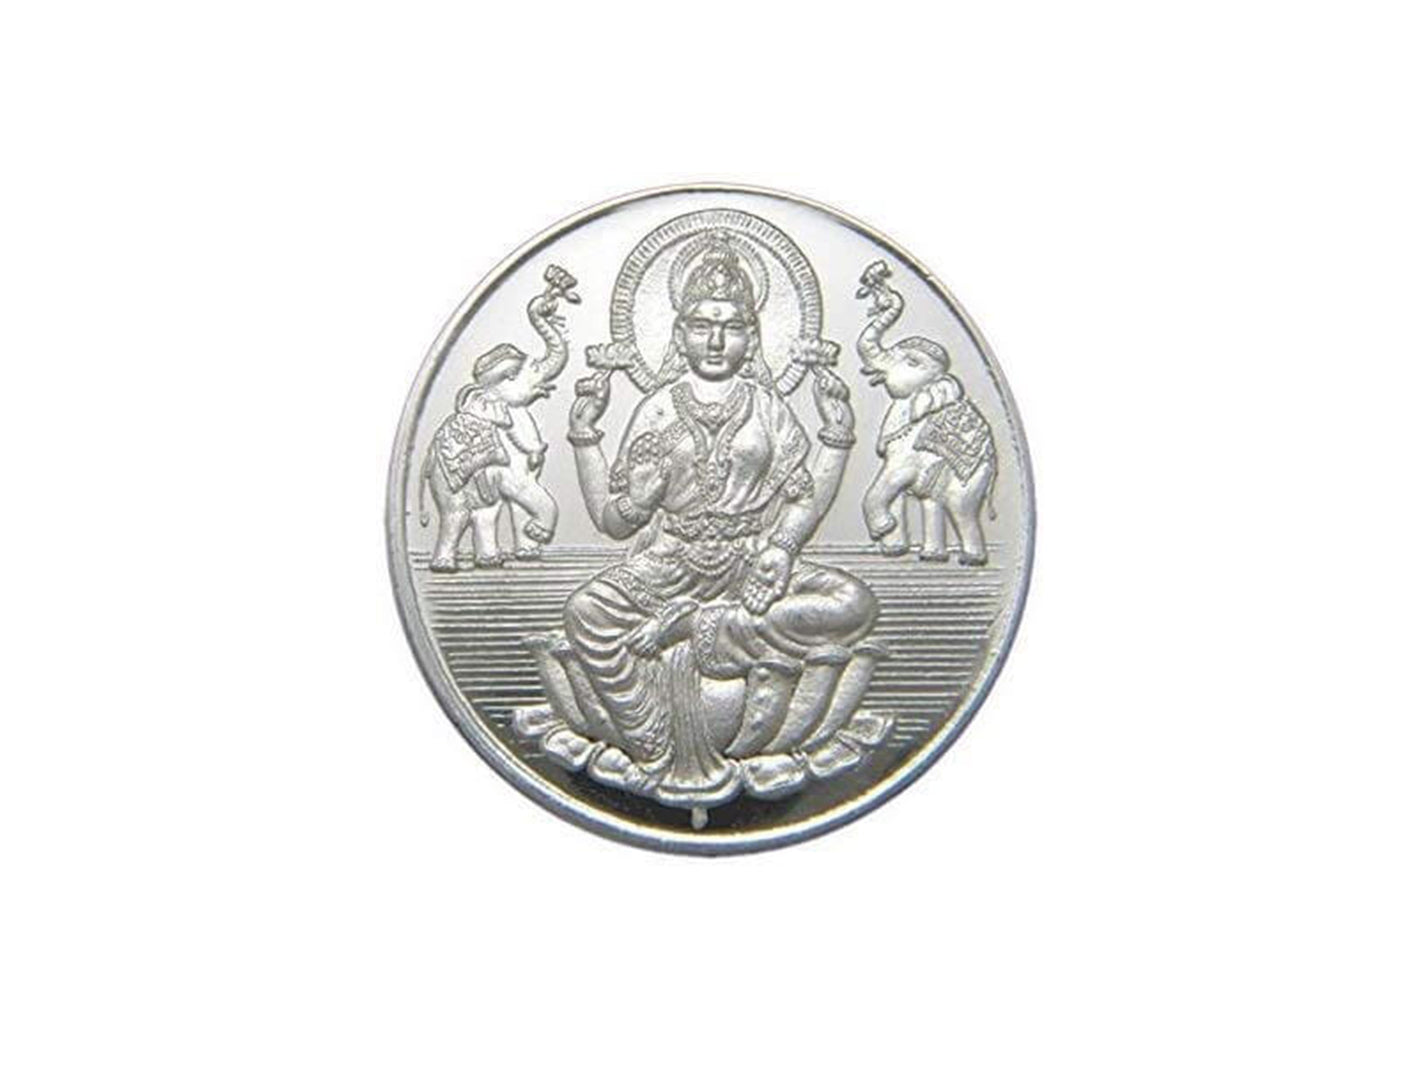 10 Grams Silver Laxmiji Coin - Roop Darshan